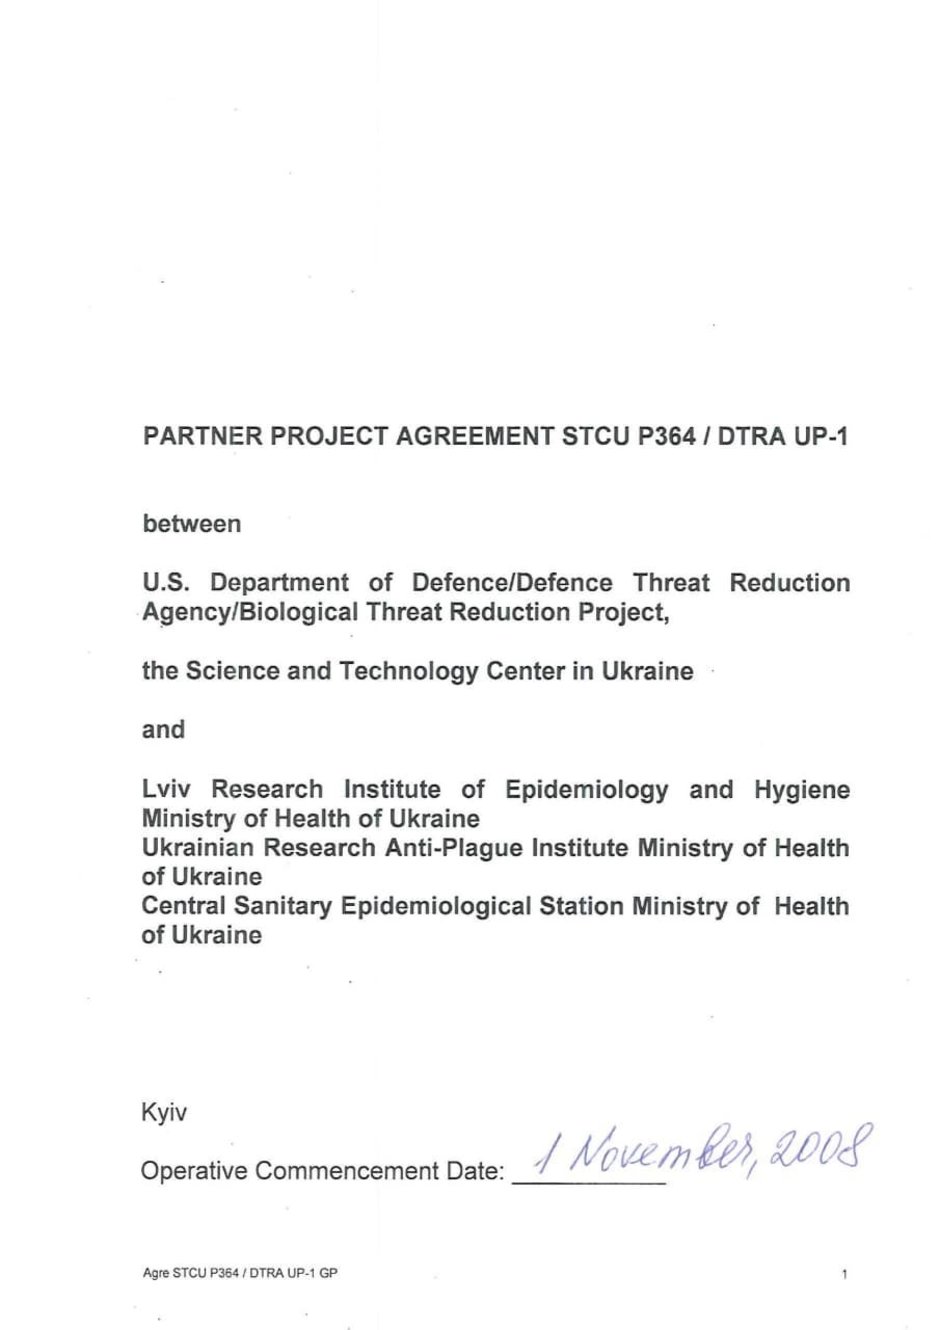 партнерское соглашение на проведение биологического проекта UP-1